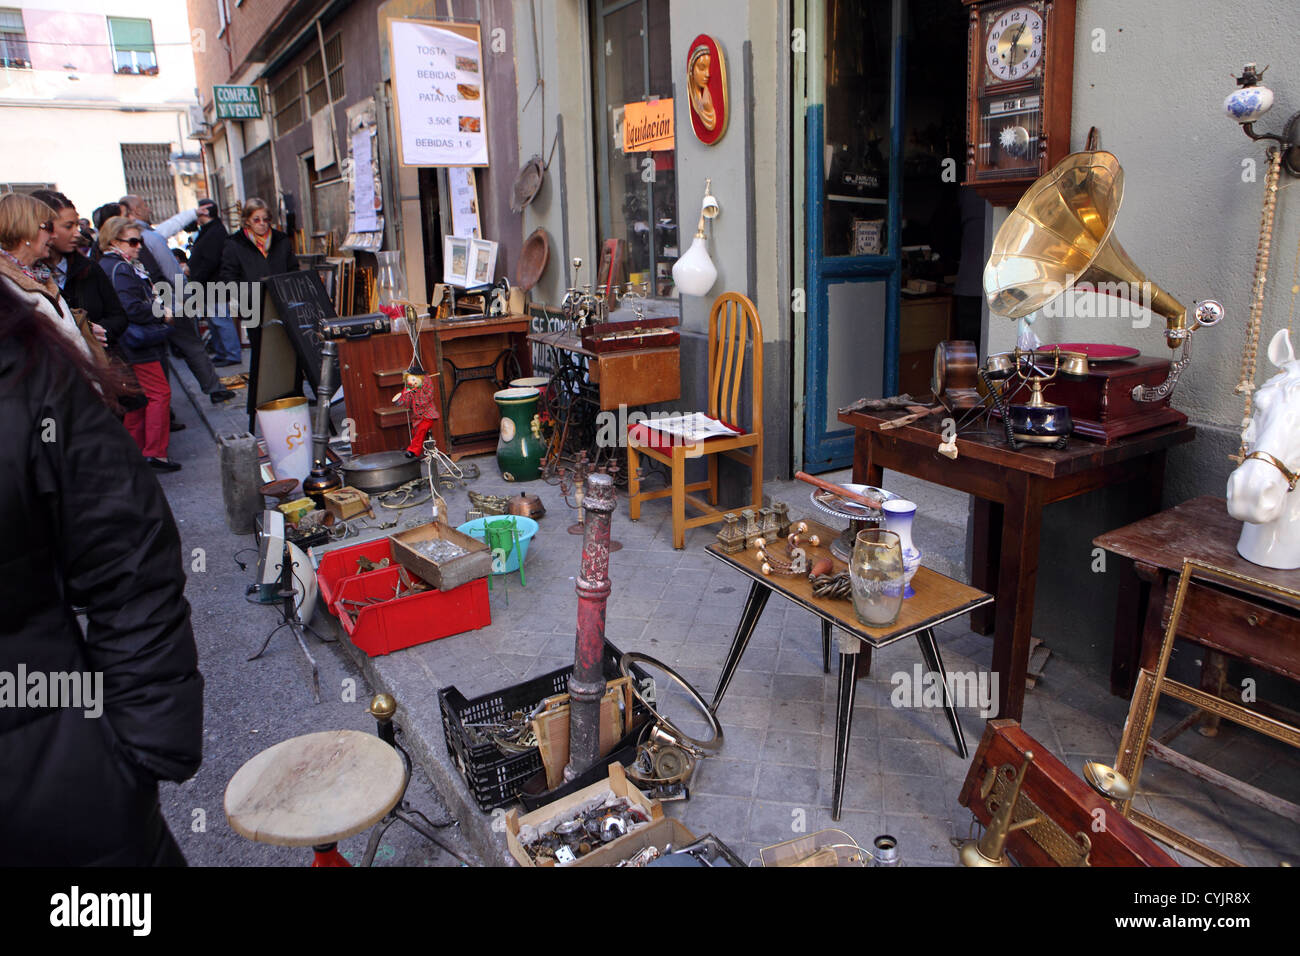 Bric-a-Brac mobili di antiquariato di seconda mano articoli per la vendita, el rastro domenica street market, Madrid, Spagna. Foto Stock